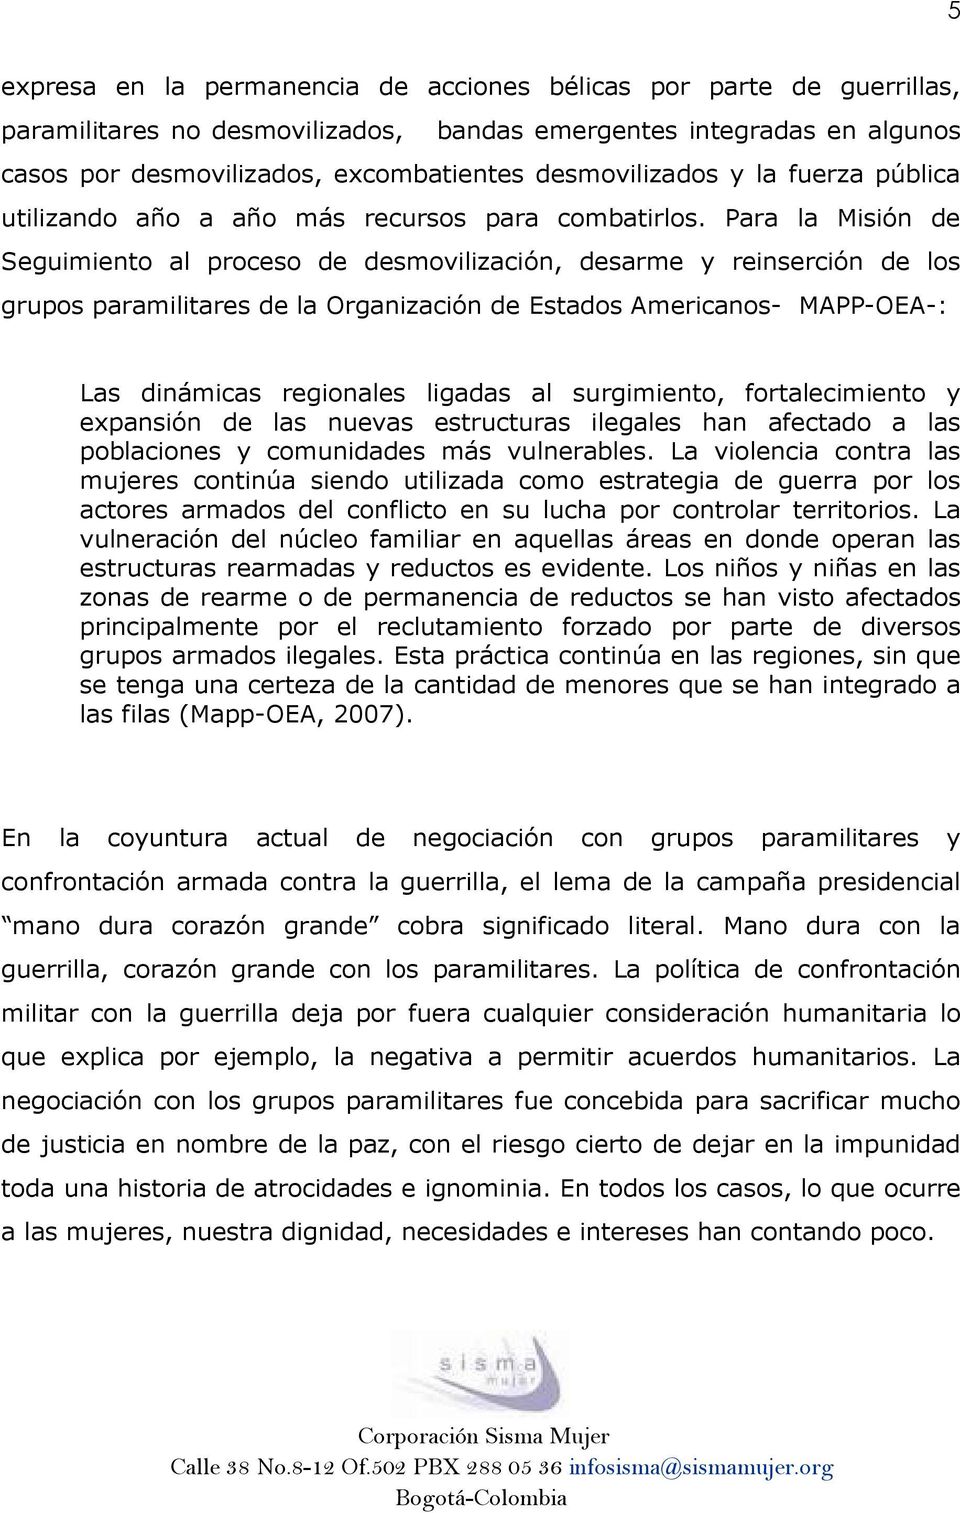 Para la Misión de Seguimiento al proceso de desmovilización, desarme y reinserción de los grupos paramilitares de la Organización de Estados Americanos- MAPP-OEA-: Las dinámicas regionales ligadas al